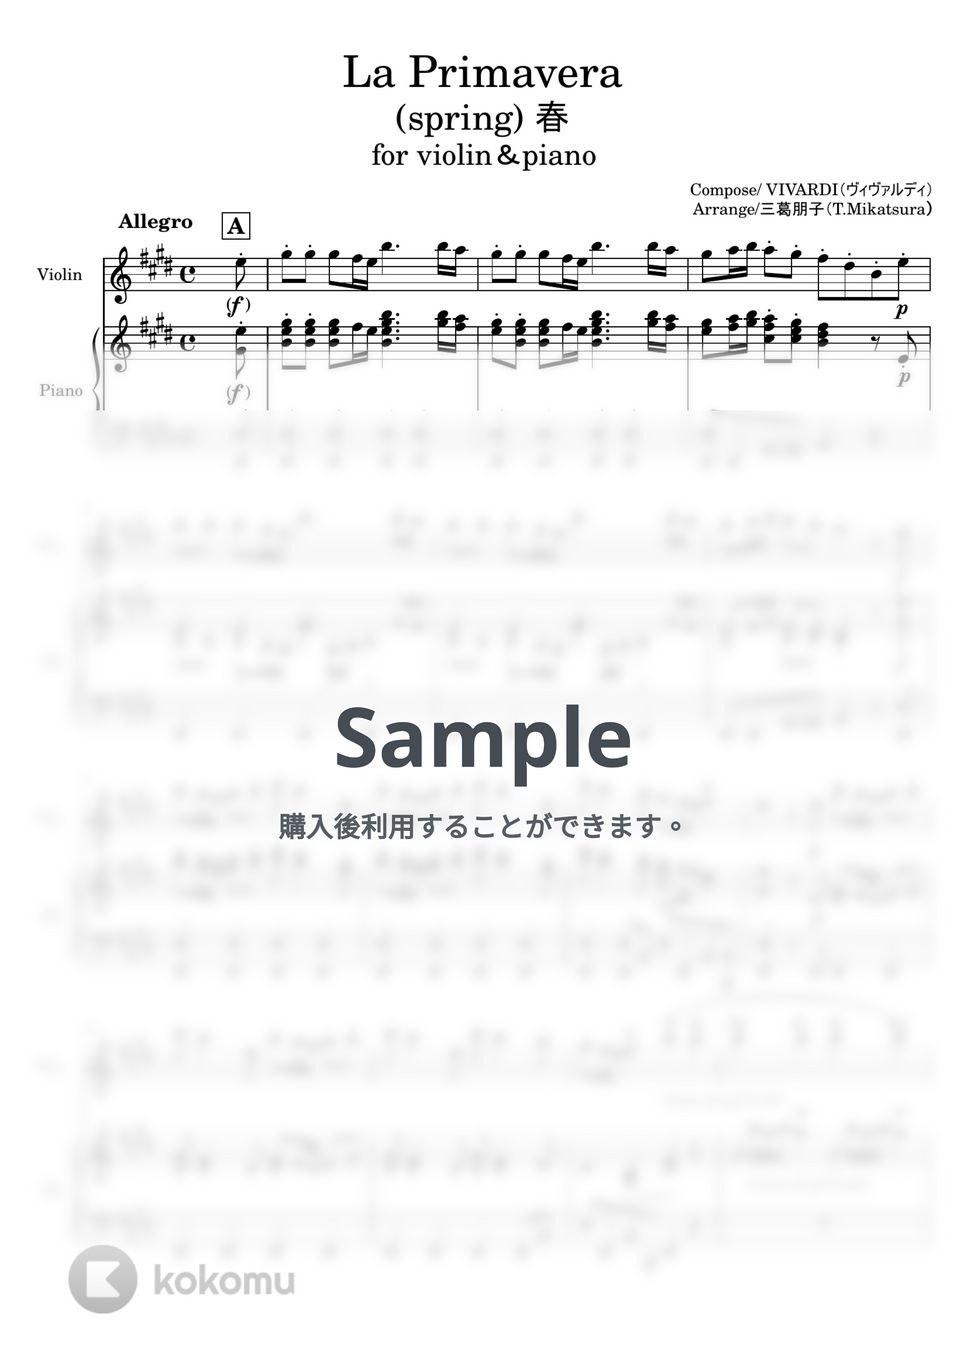 ビバルディ - 春 (四季より/ピアノ連弾) by 三葛朋子（T.Mikatsura）